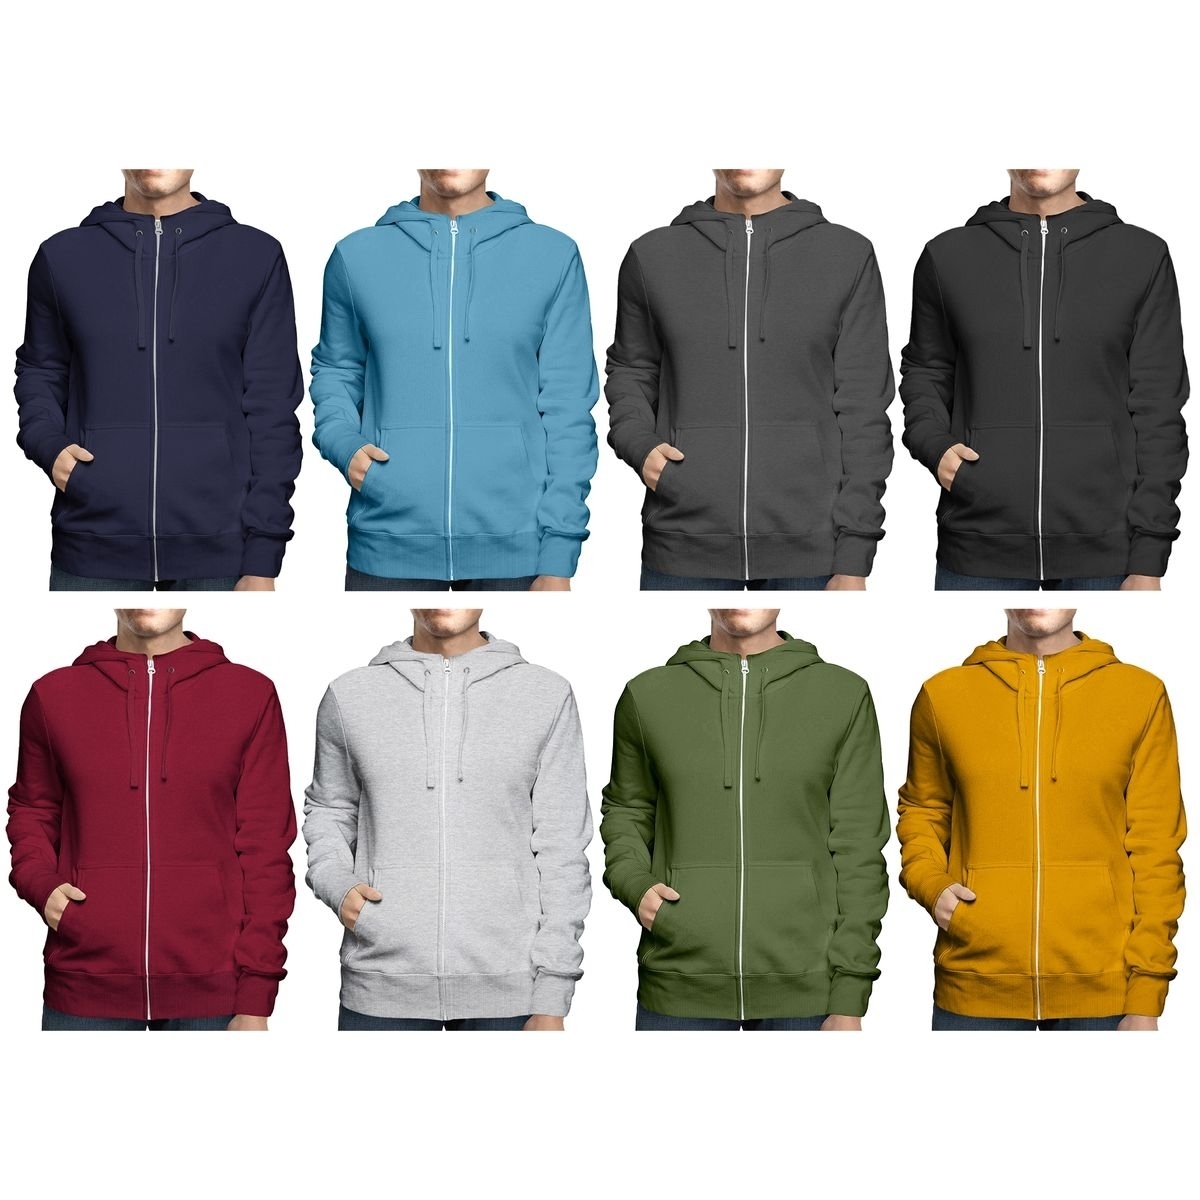 2-Pack: Men's Winter Warm Soft Cozy Full Zip-Up Fleece Lined Hoodie Sweatshirt - Medium